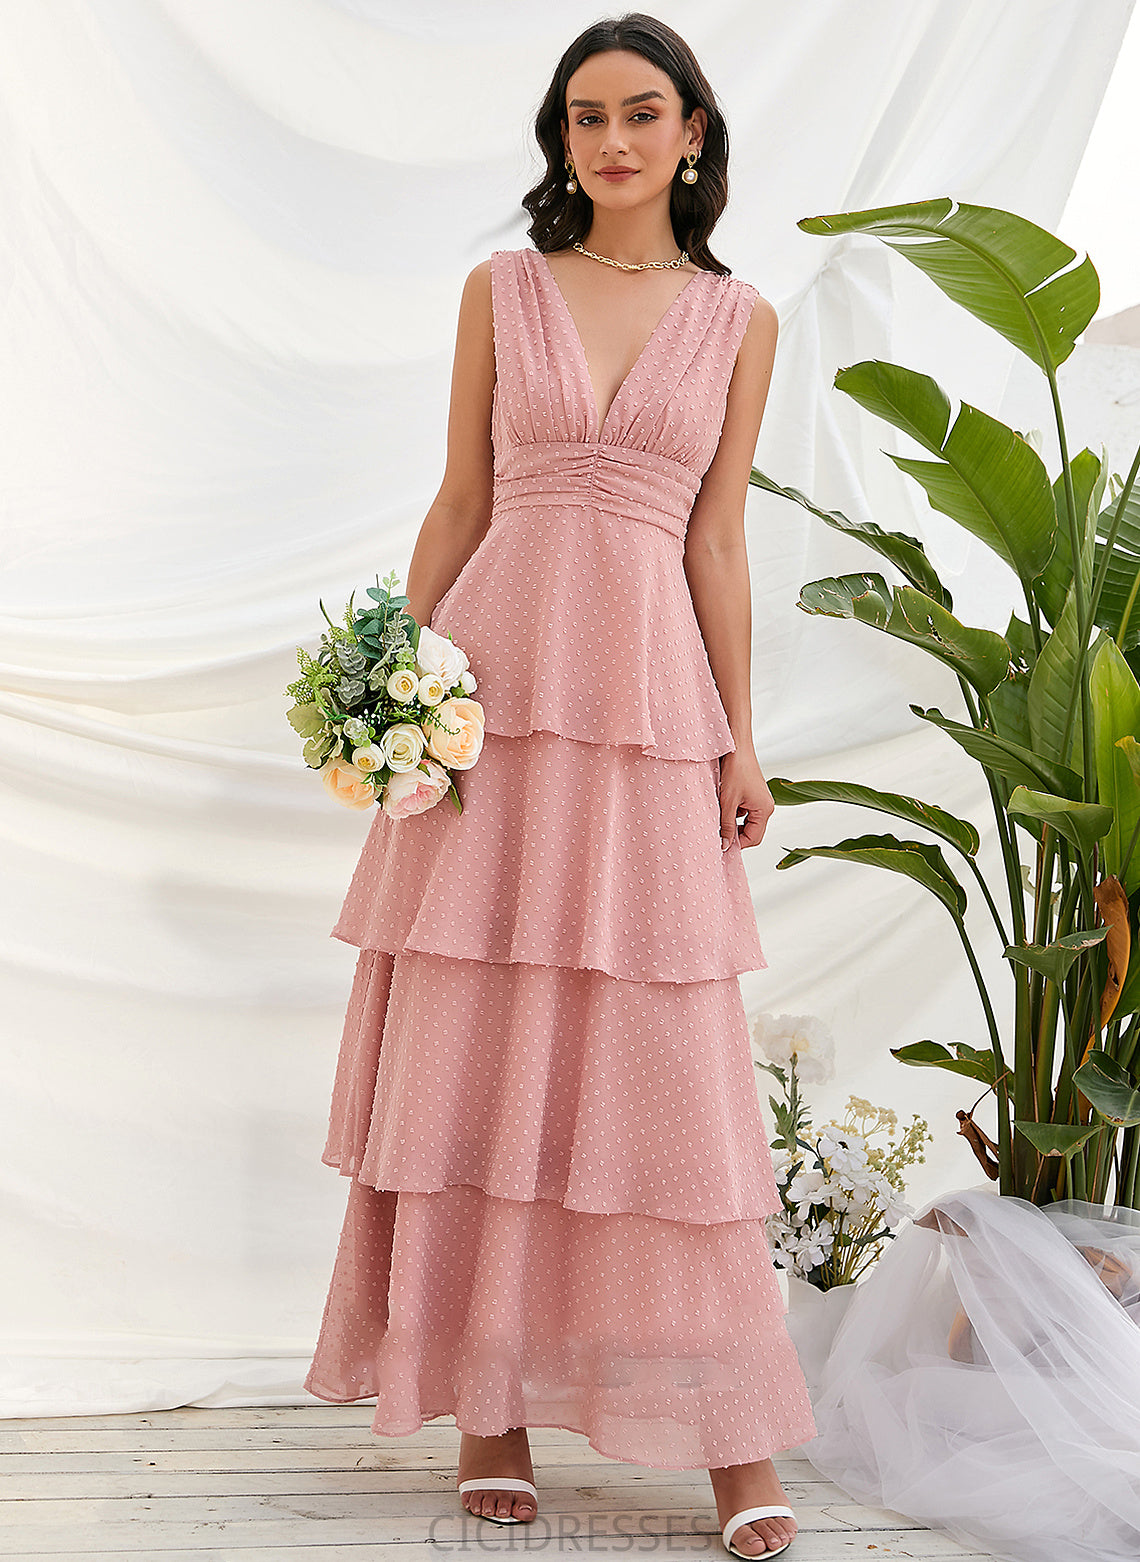 Silhouette A-Line Fabric Neckline Length Straps Ankle-Length V-neck Briana Sleeveless Floor Length Natural Waist Bridesmaid Dresses